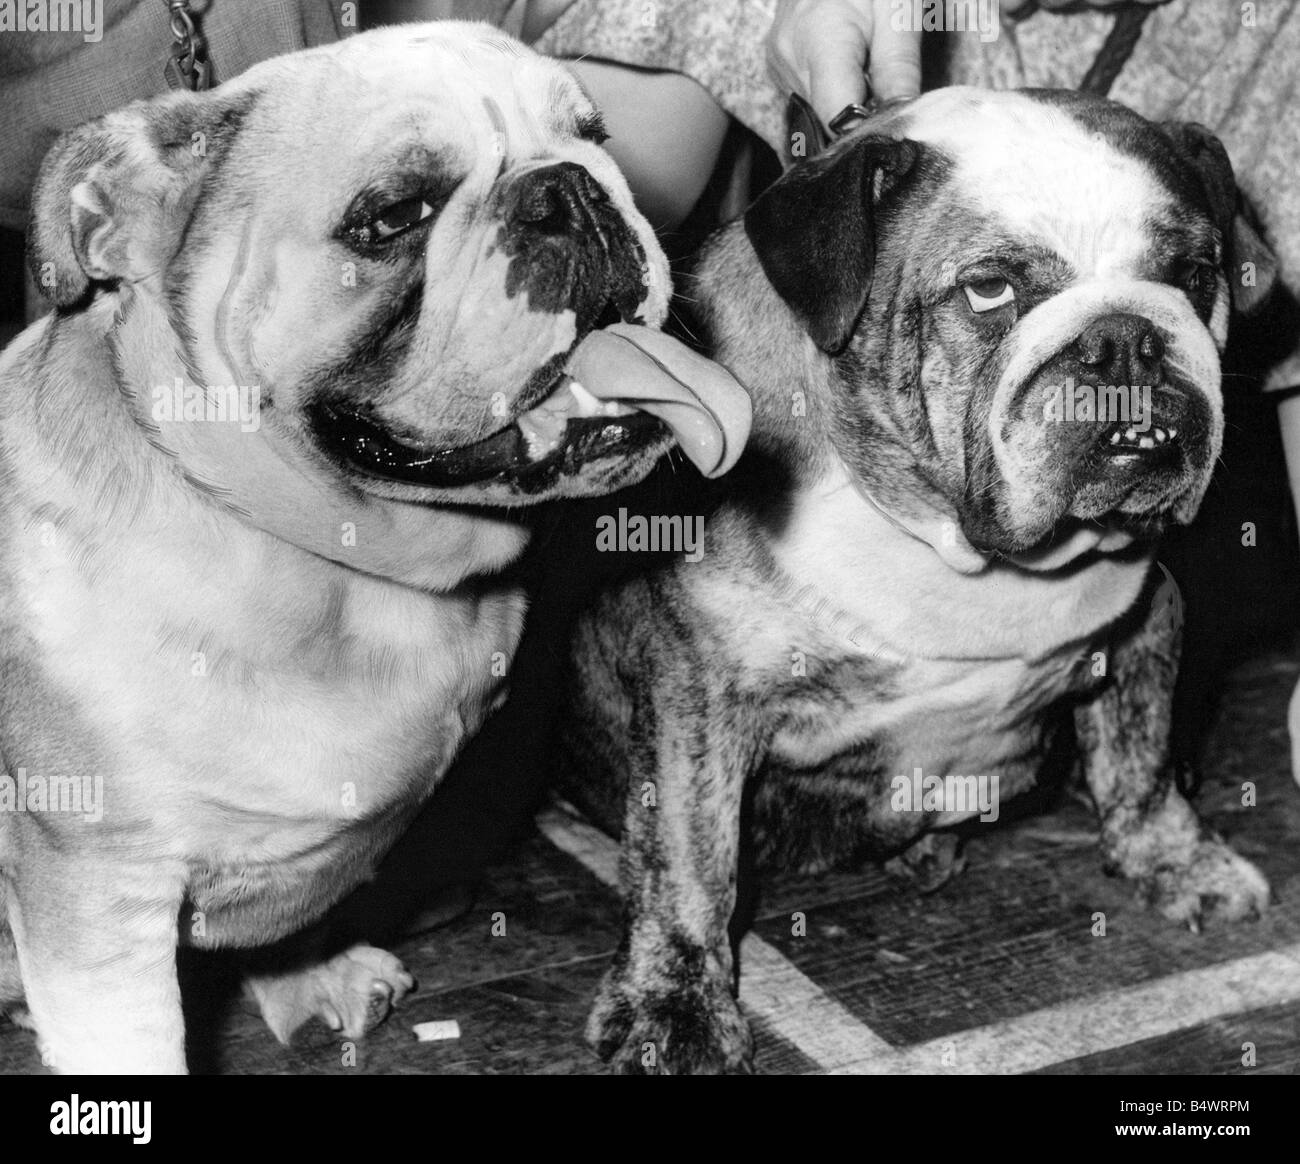 English bulldogs Banque d'images noir et blanc - Alamy